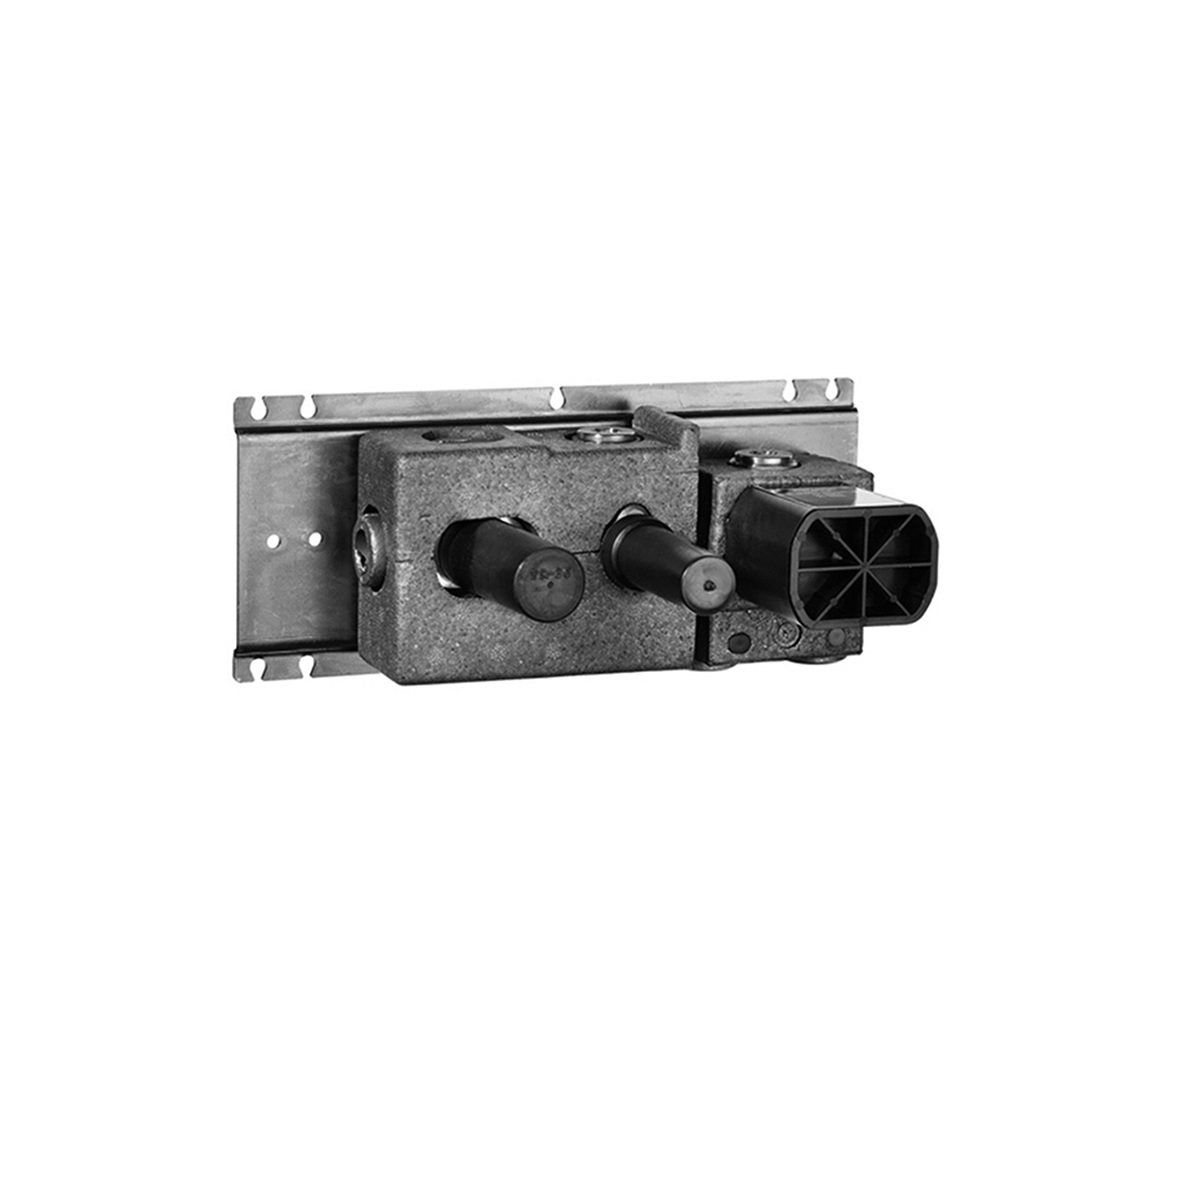 Fantini Unterputz-Einbauteil-Eingriffmischer mit Zug-Umstellung ohne Auslauf-2200D084A